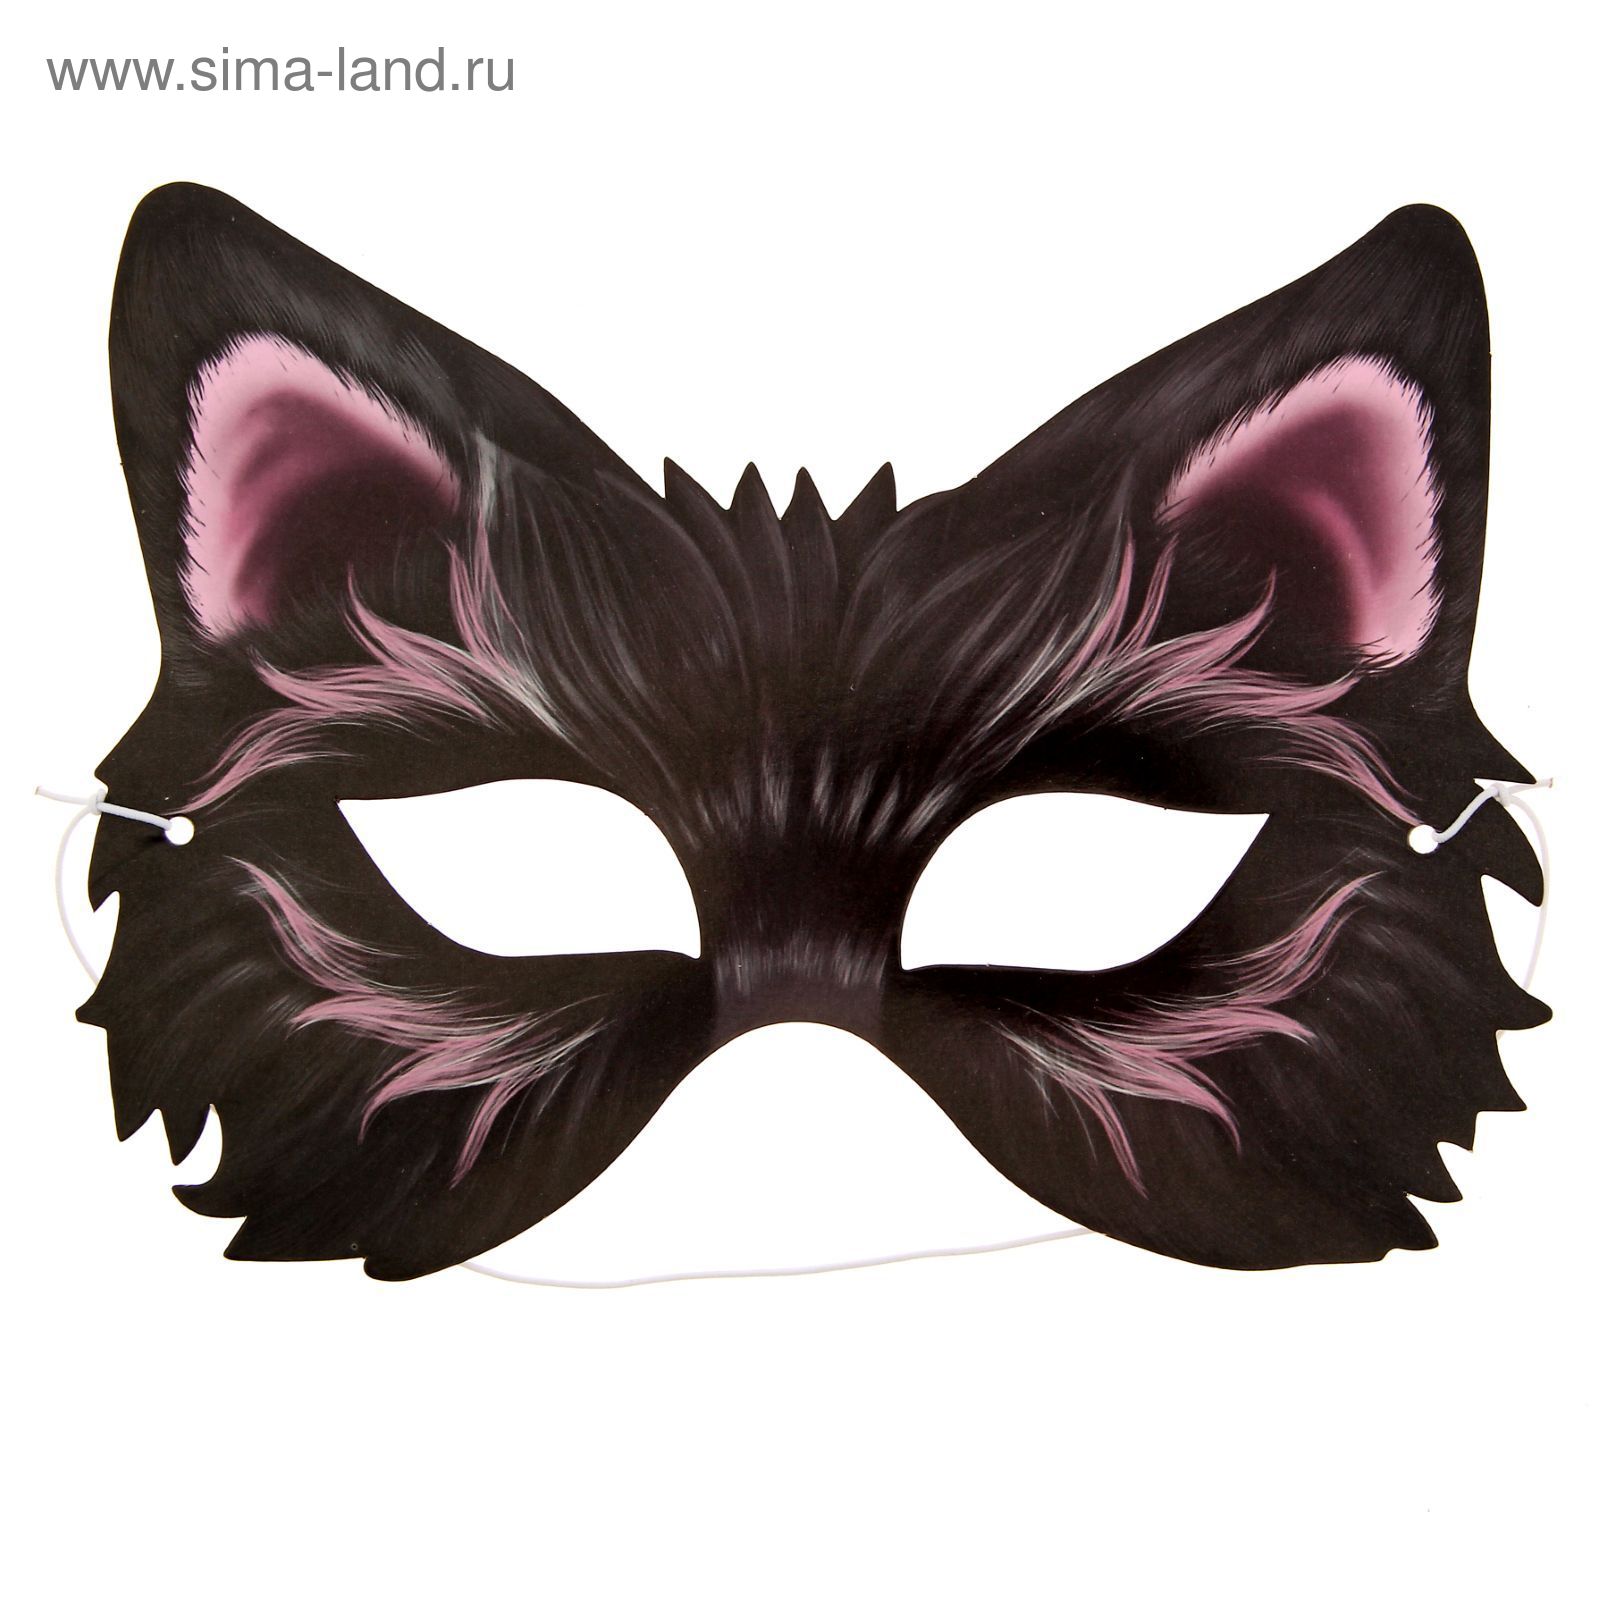 Карнавальная маска «Кот» на резинке, поролон